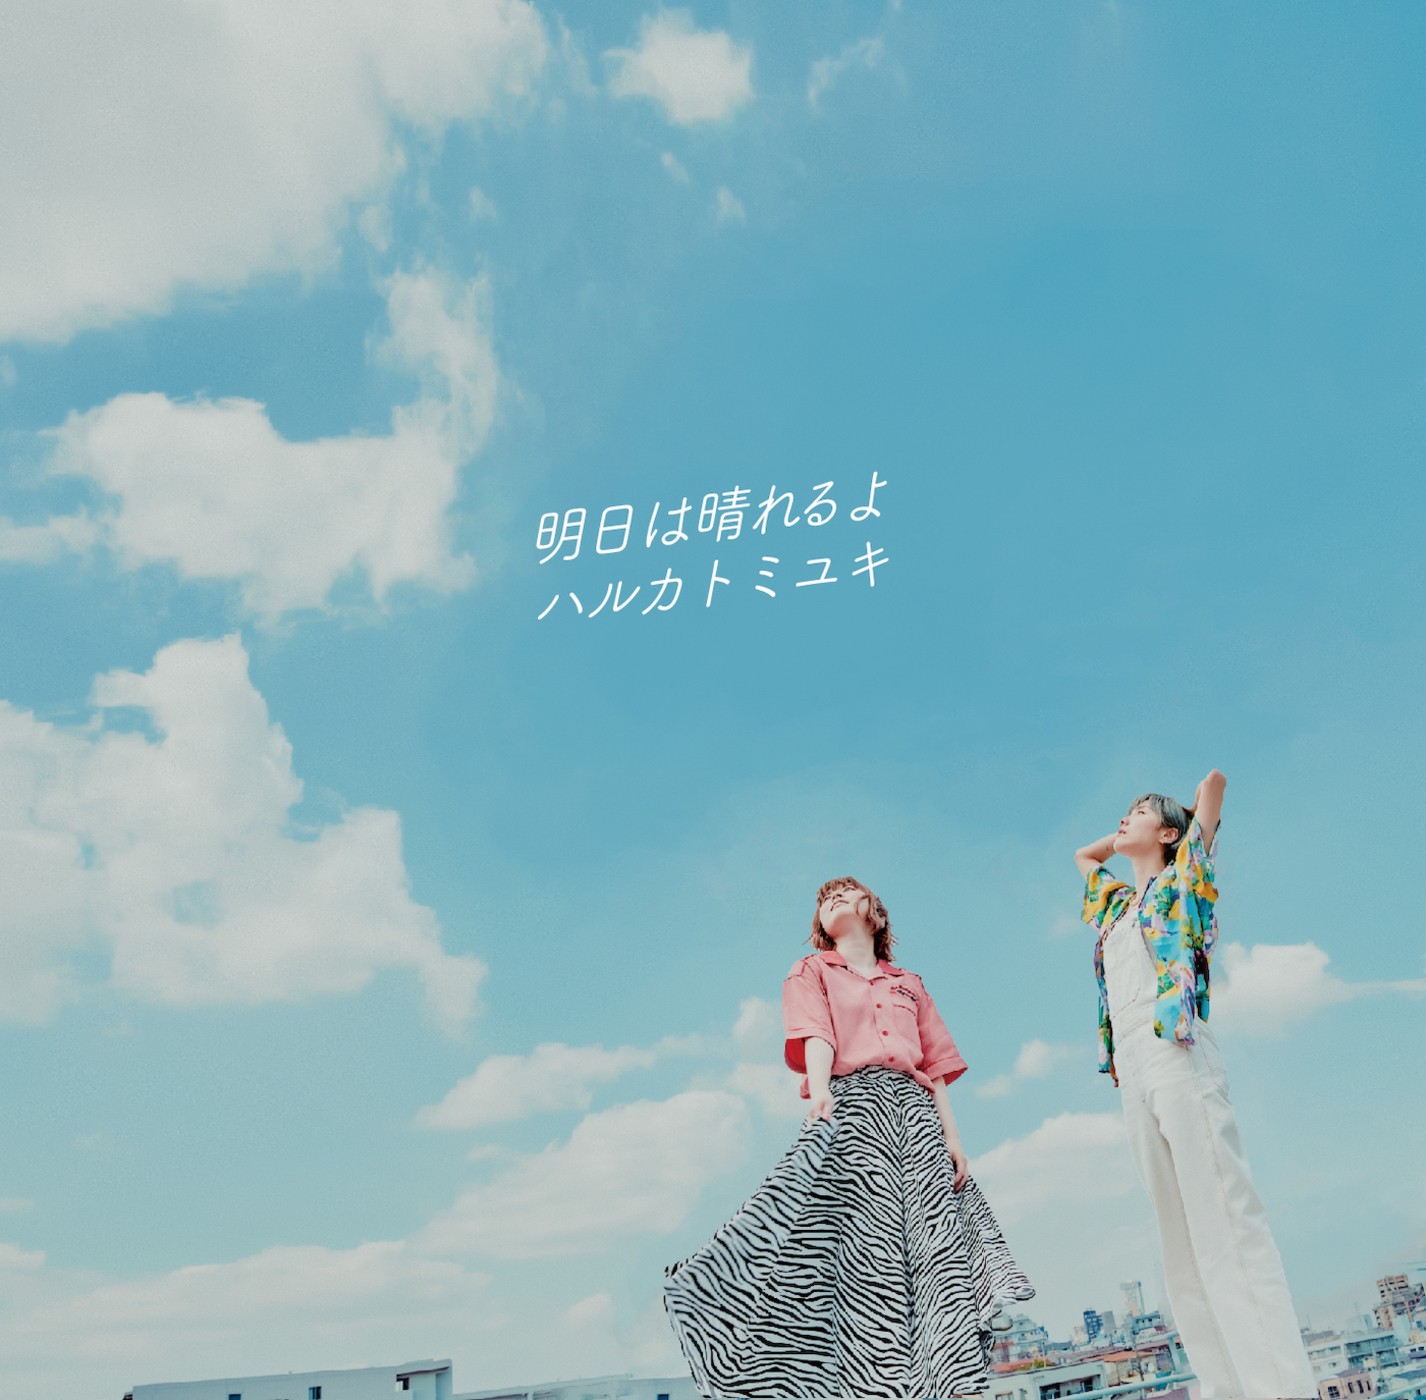 ハルカトミユキ (Haruka to Miyuki) – 明日は晴れるよ [FLAC / WEB] [2021.08.25]